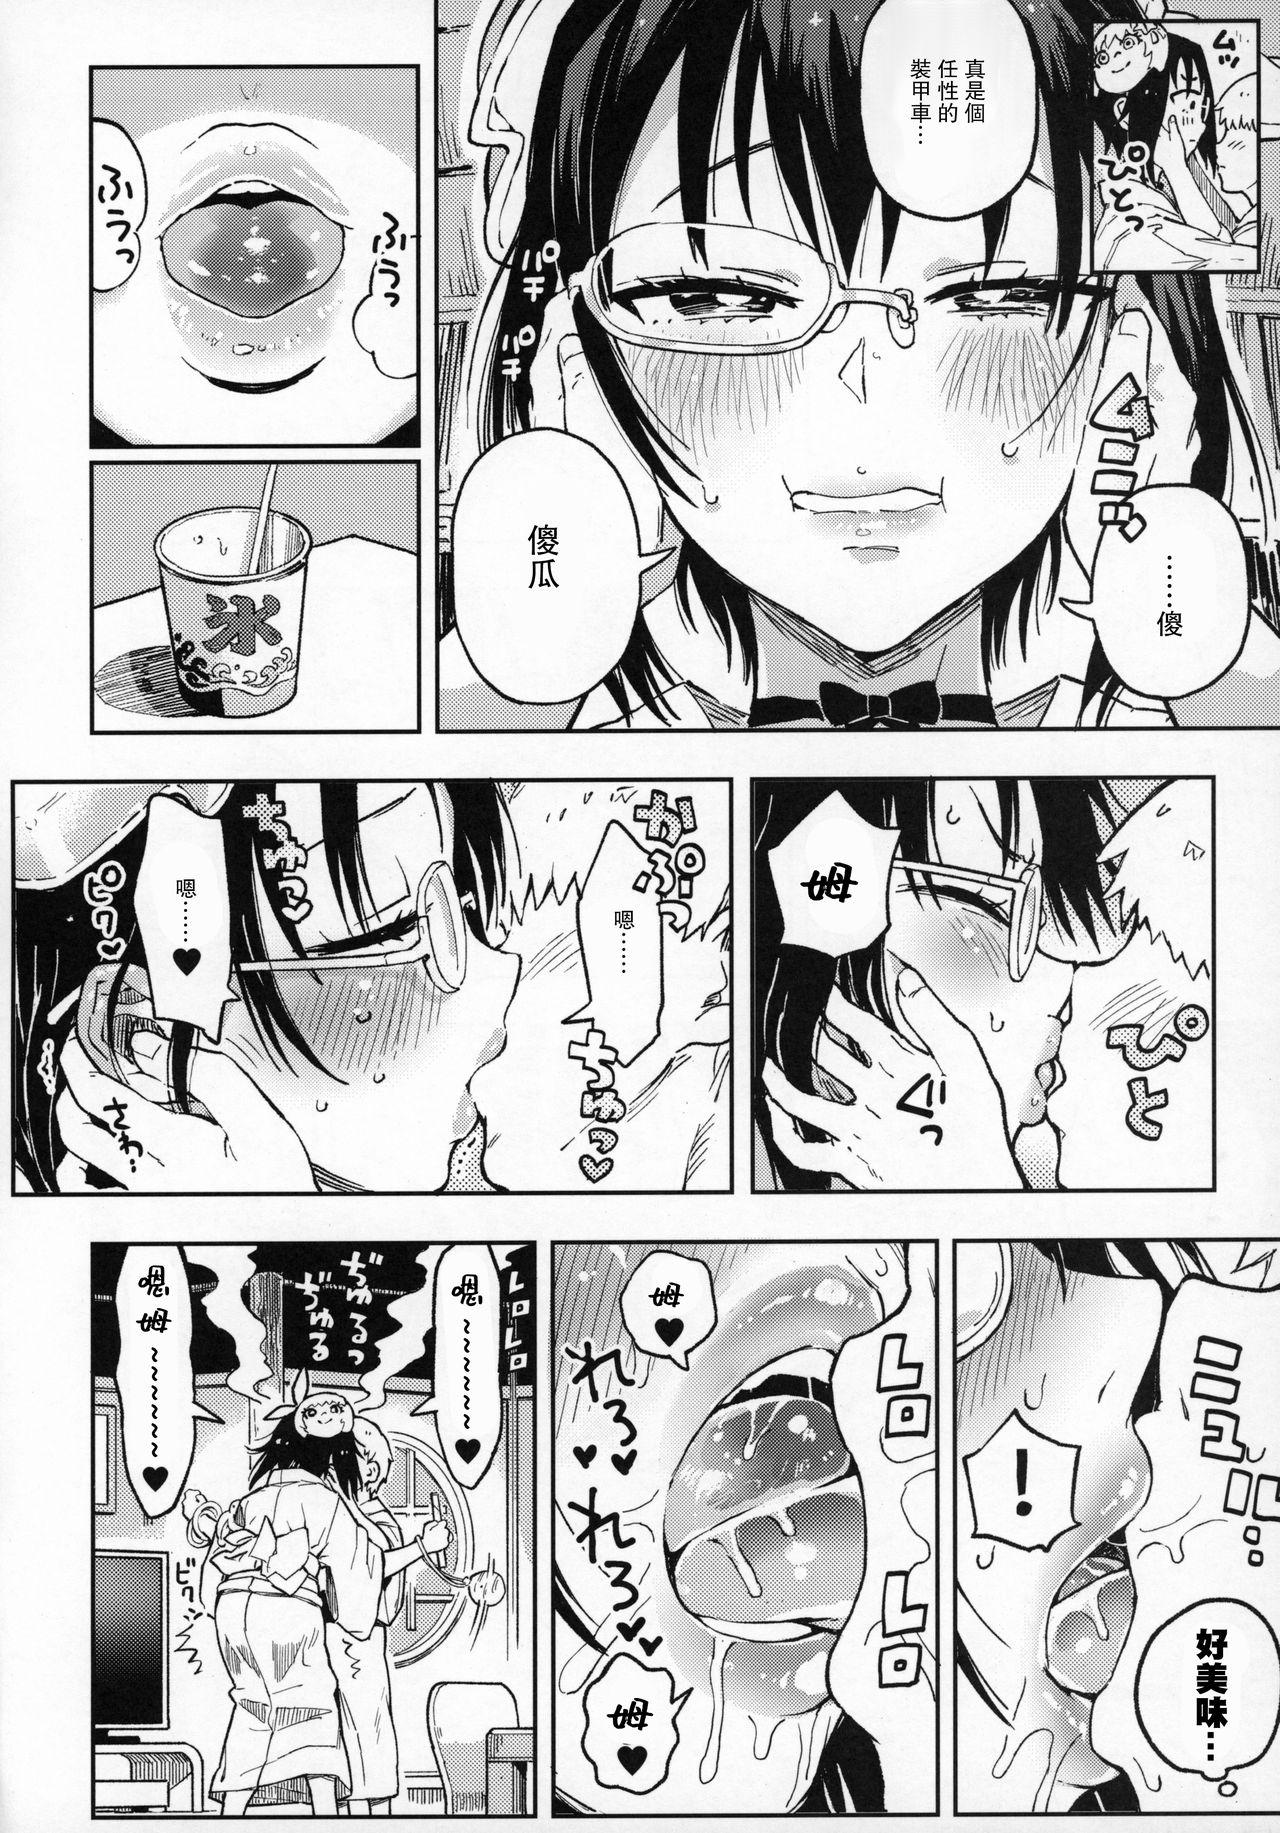 Nasty Nakanaide! Momo-chan!! Natsumatsuri - Girls und panzer Bribe - Page 8